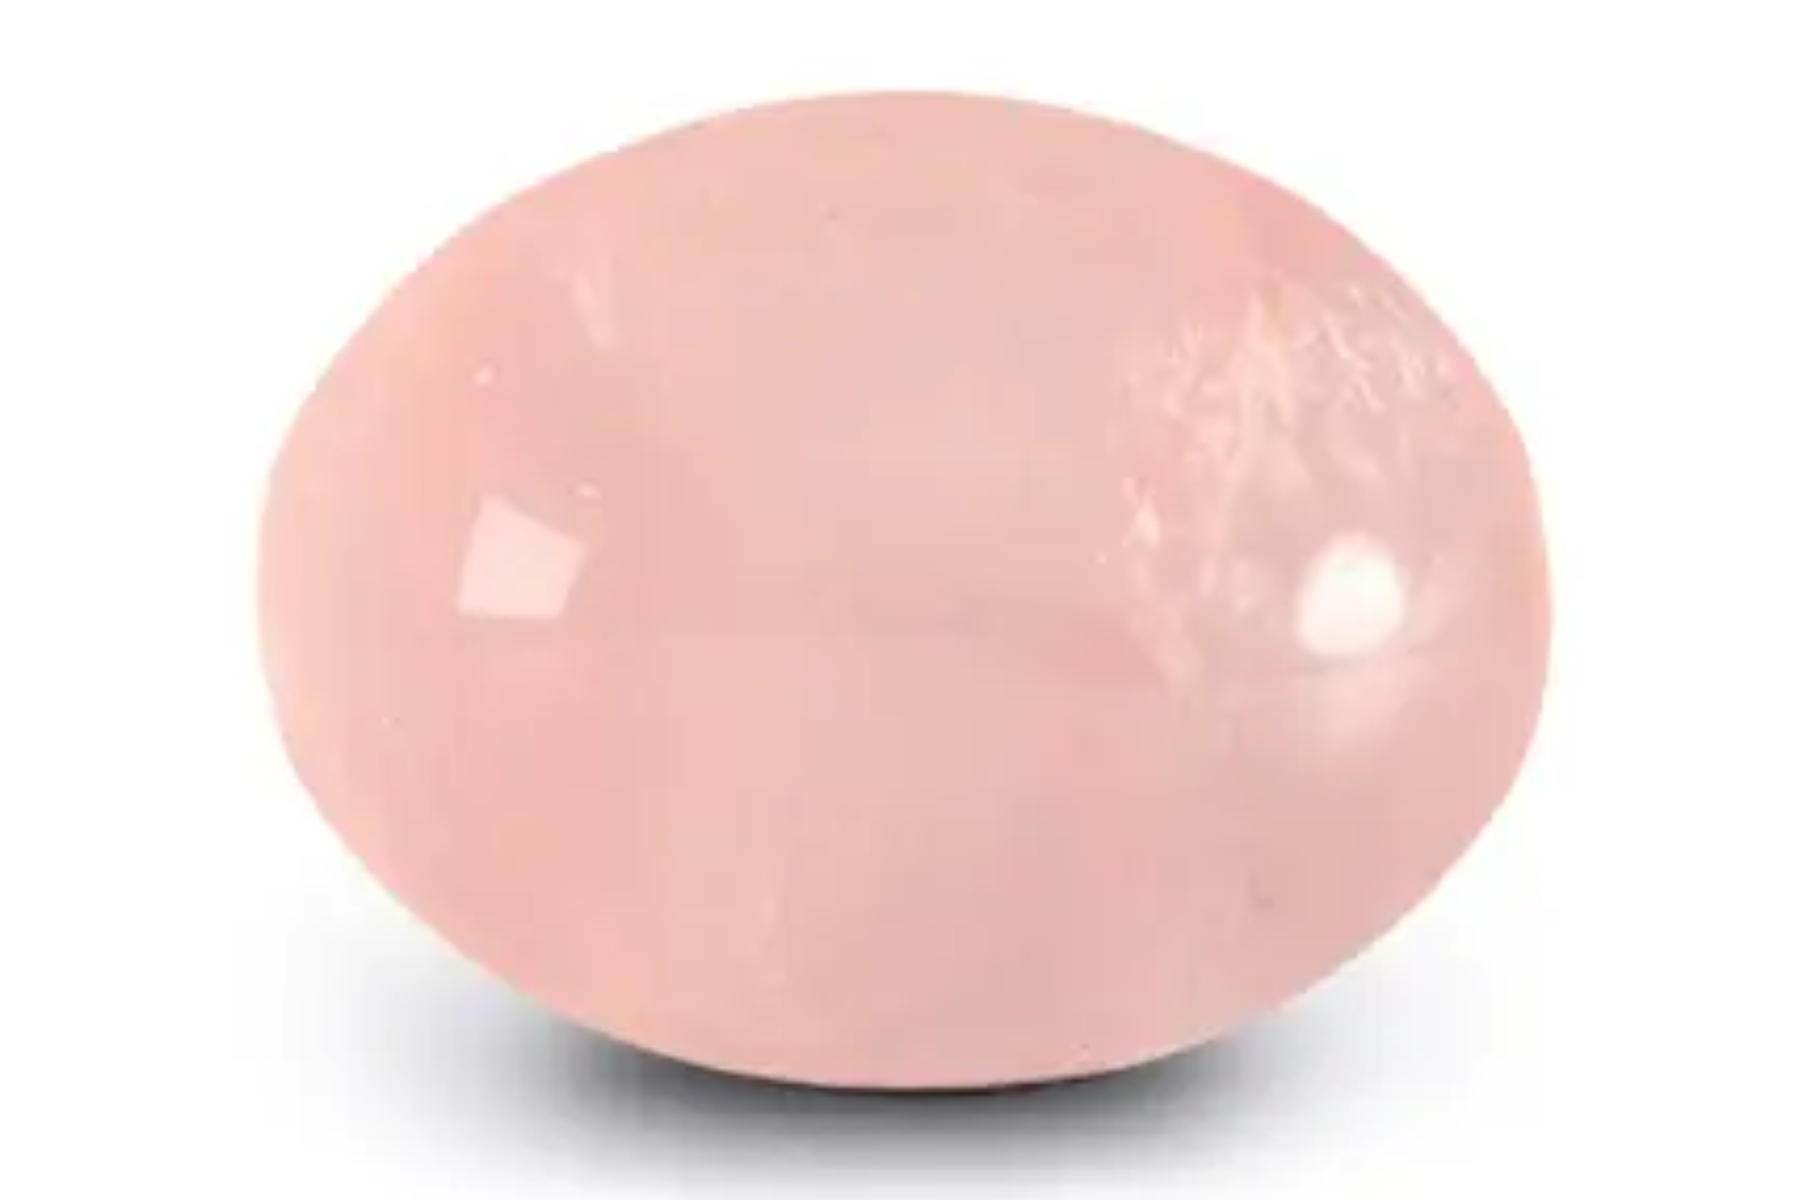 Eye-shaped pink stone